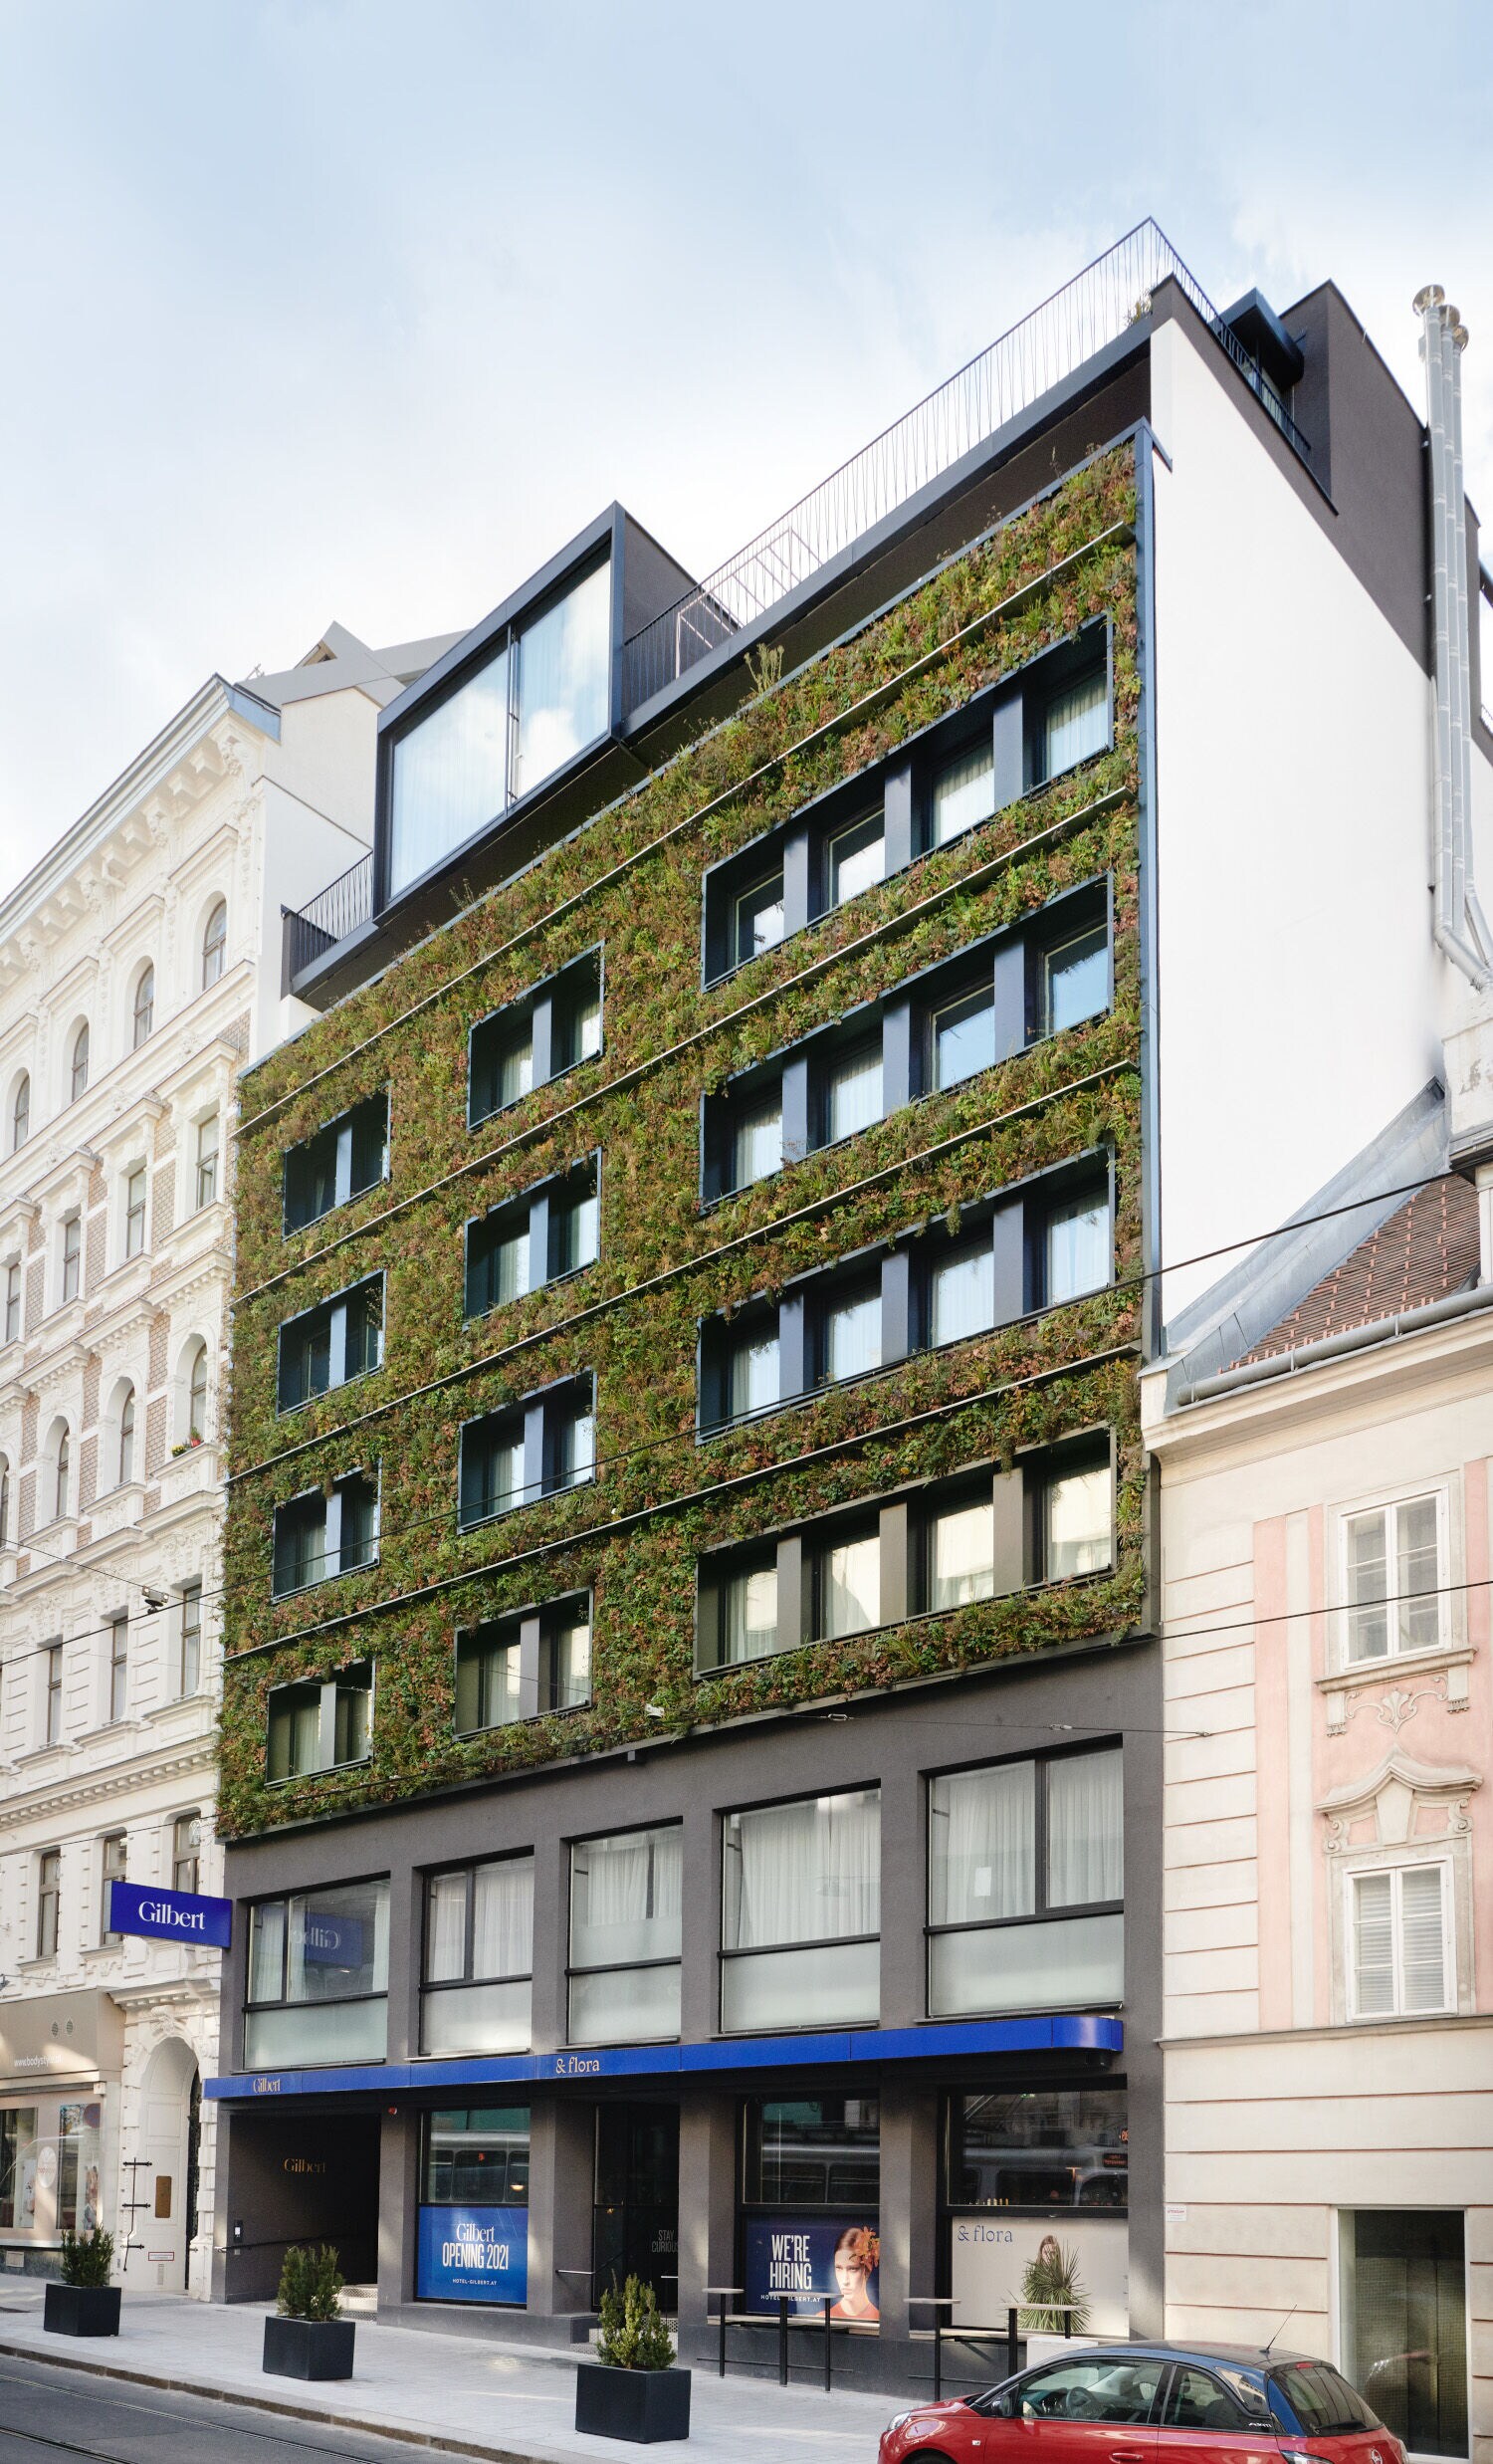 Hotel mit begrünter Fassade in Wien